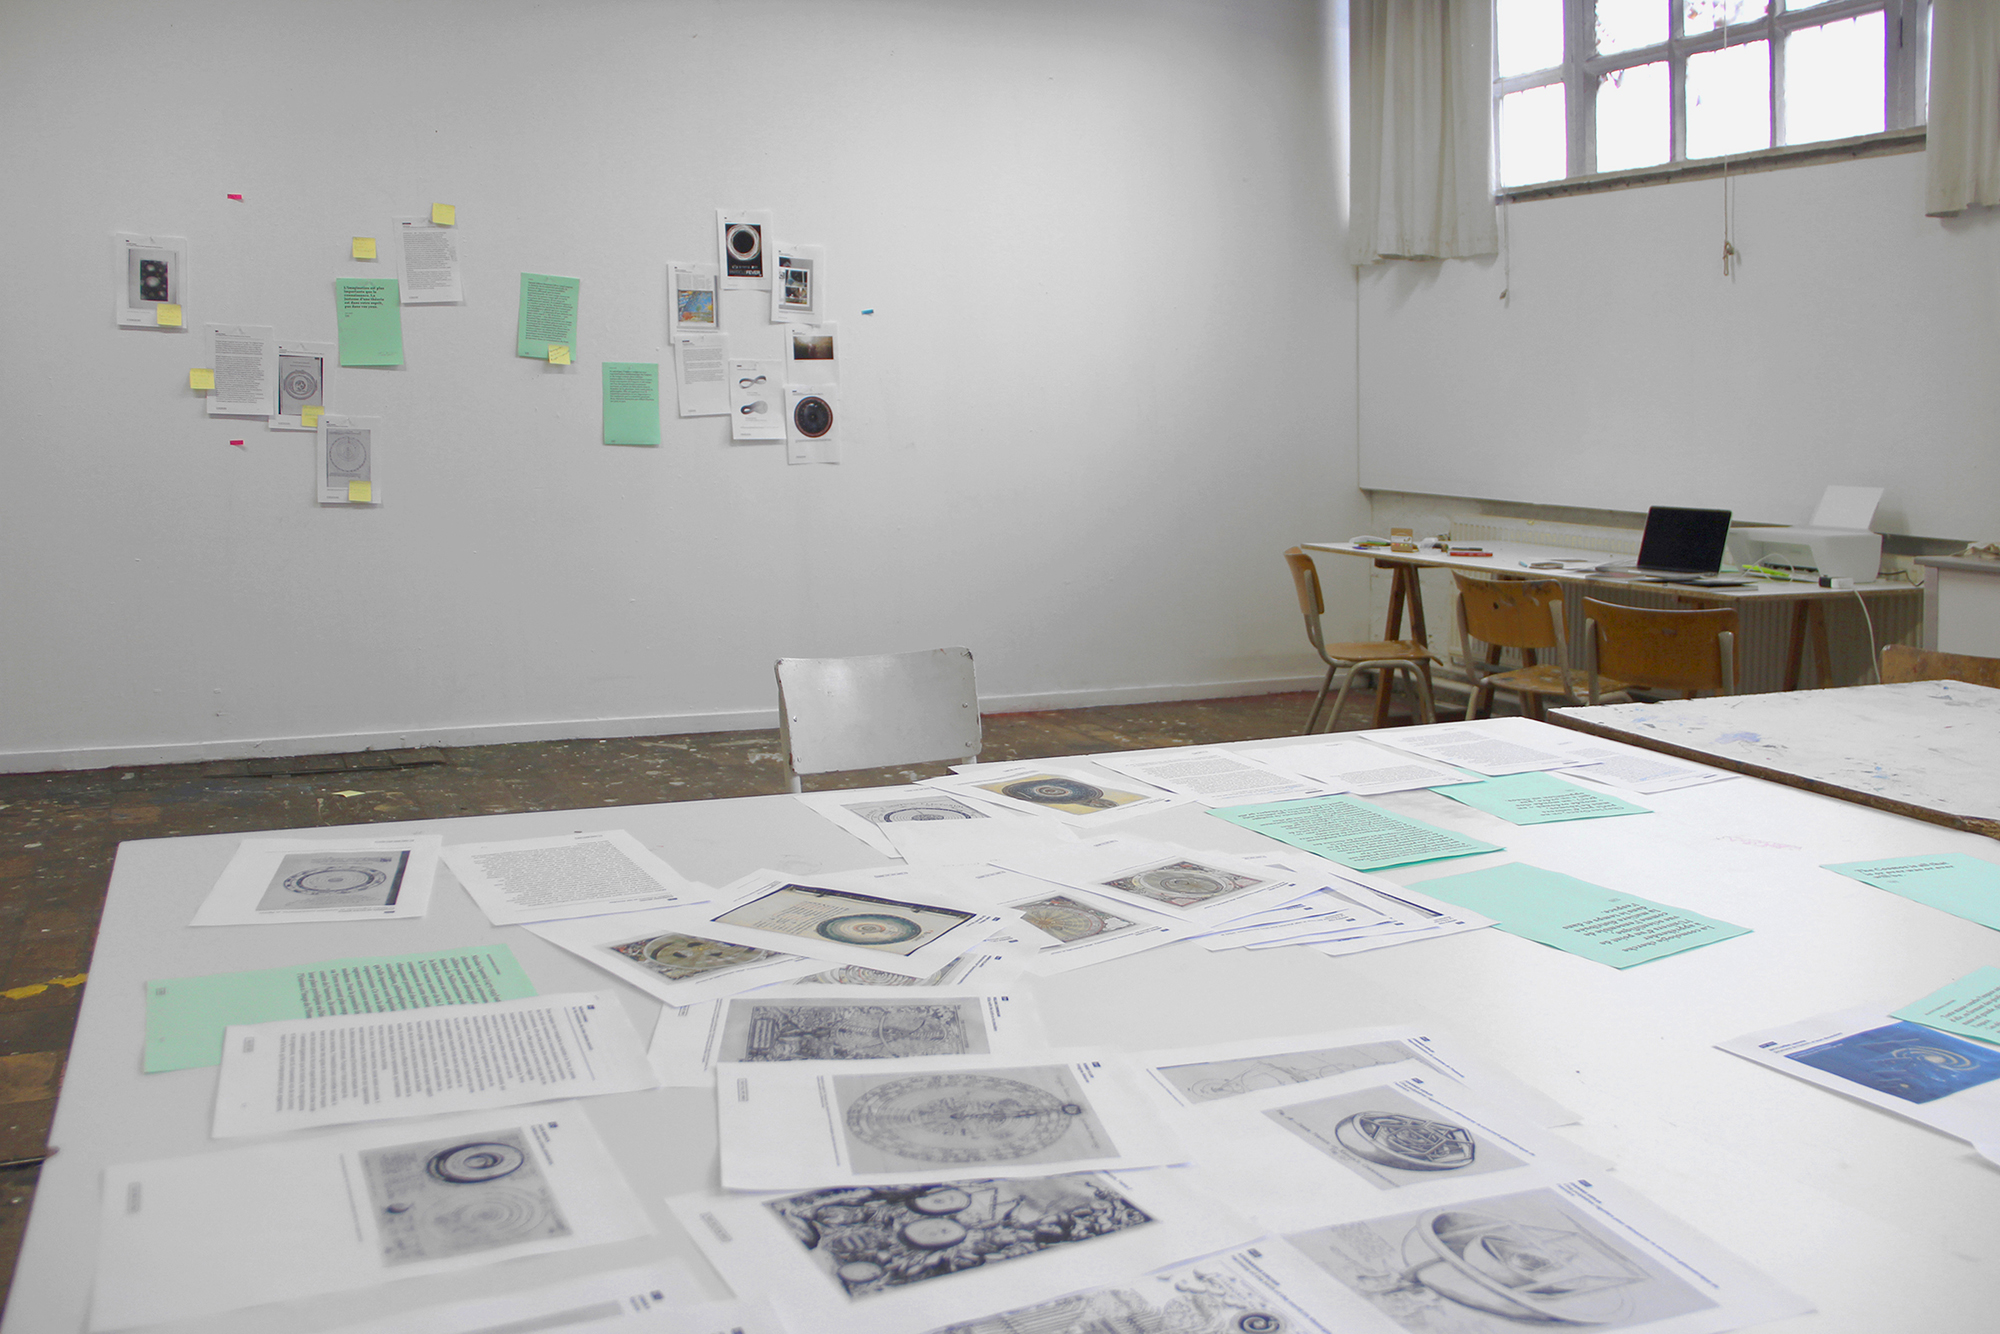 Photographie d'un workshop: feuilles disposées sur une table et sur un mur